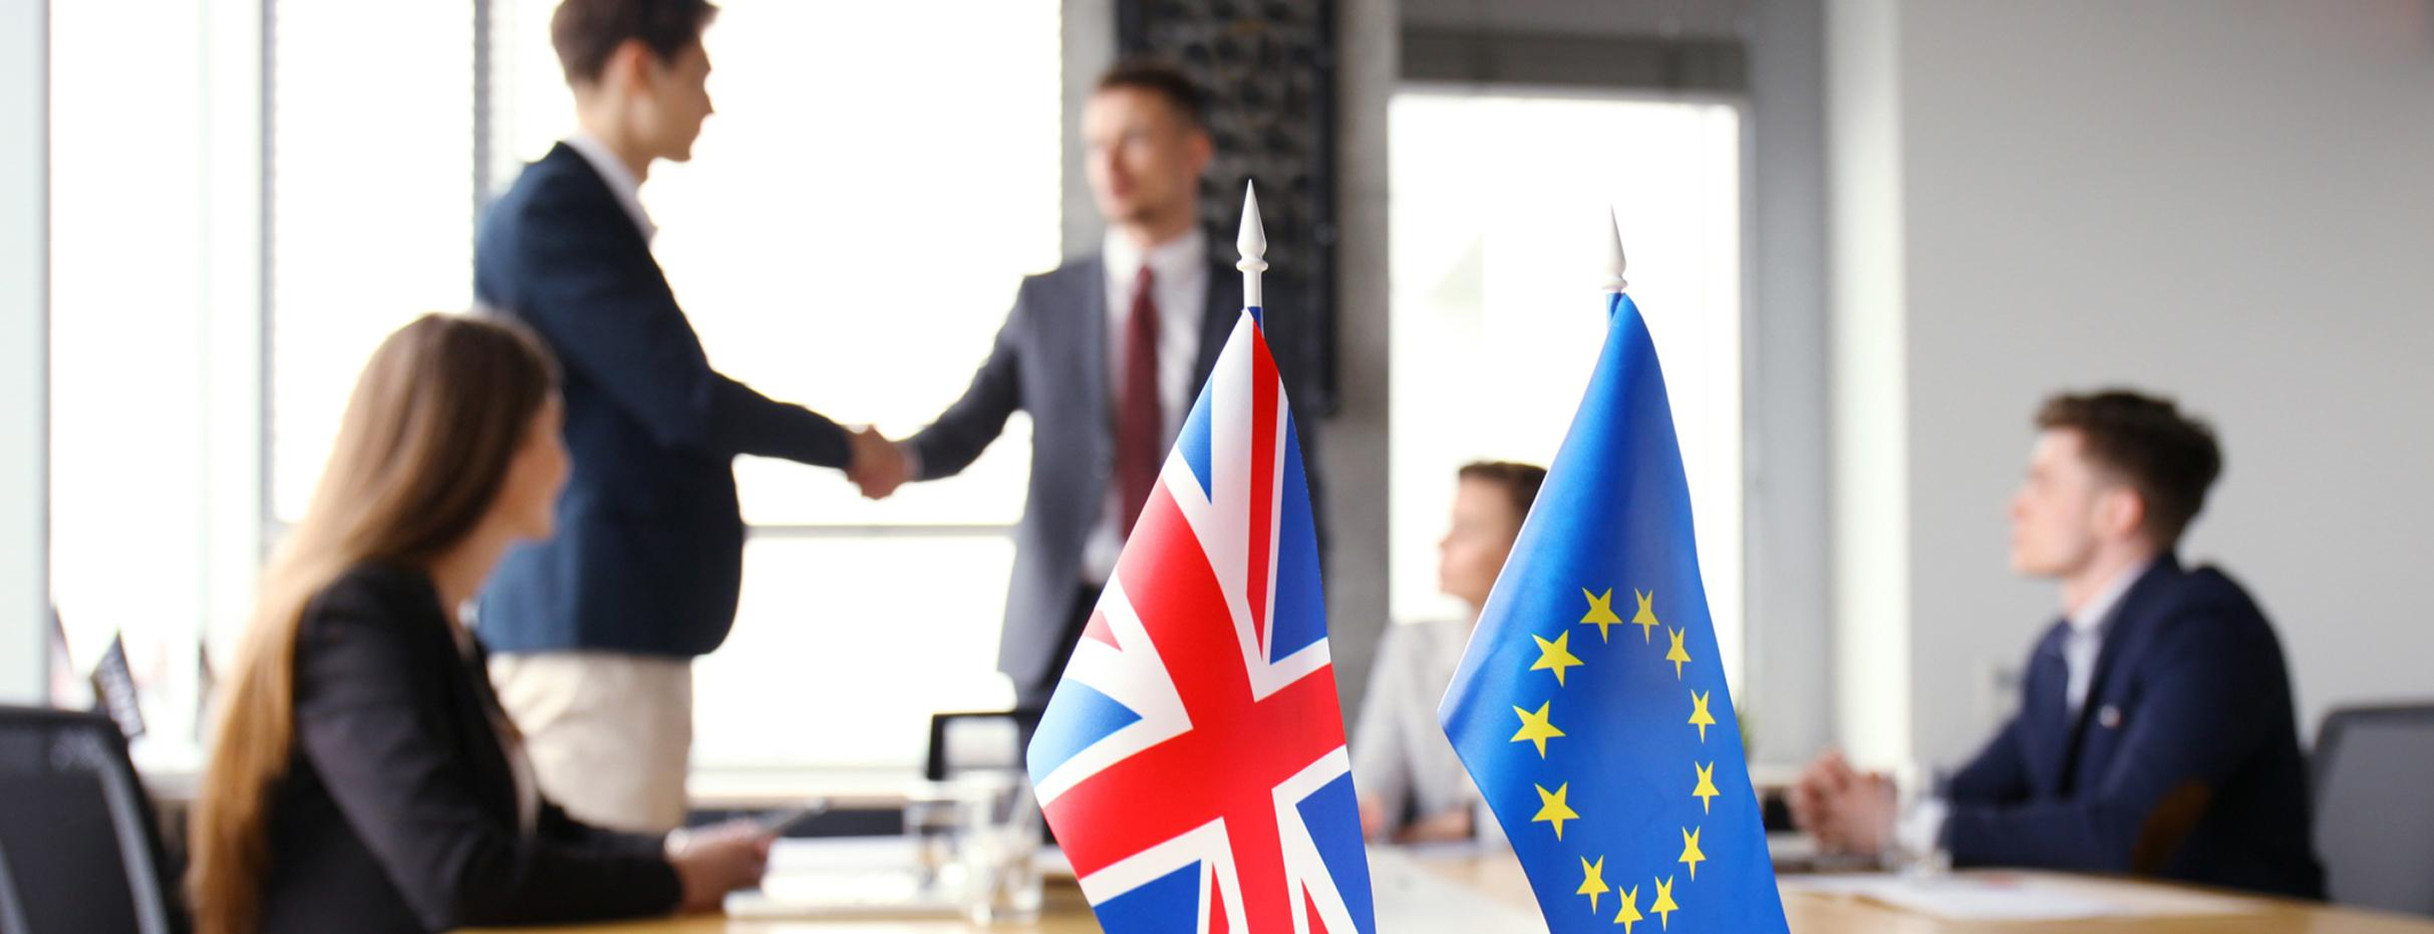 Europäische Union und das Vereinigte Königreich reichen sich die Hand (Bild: © Fotolia)